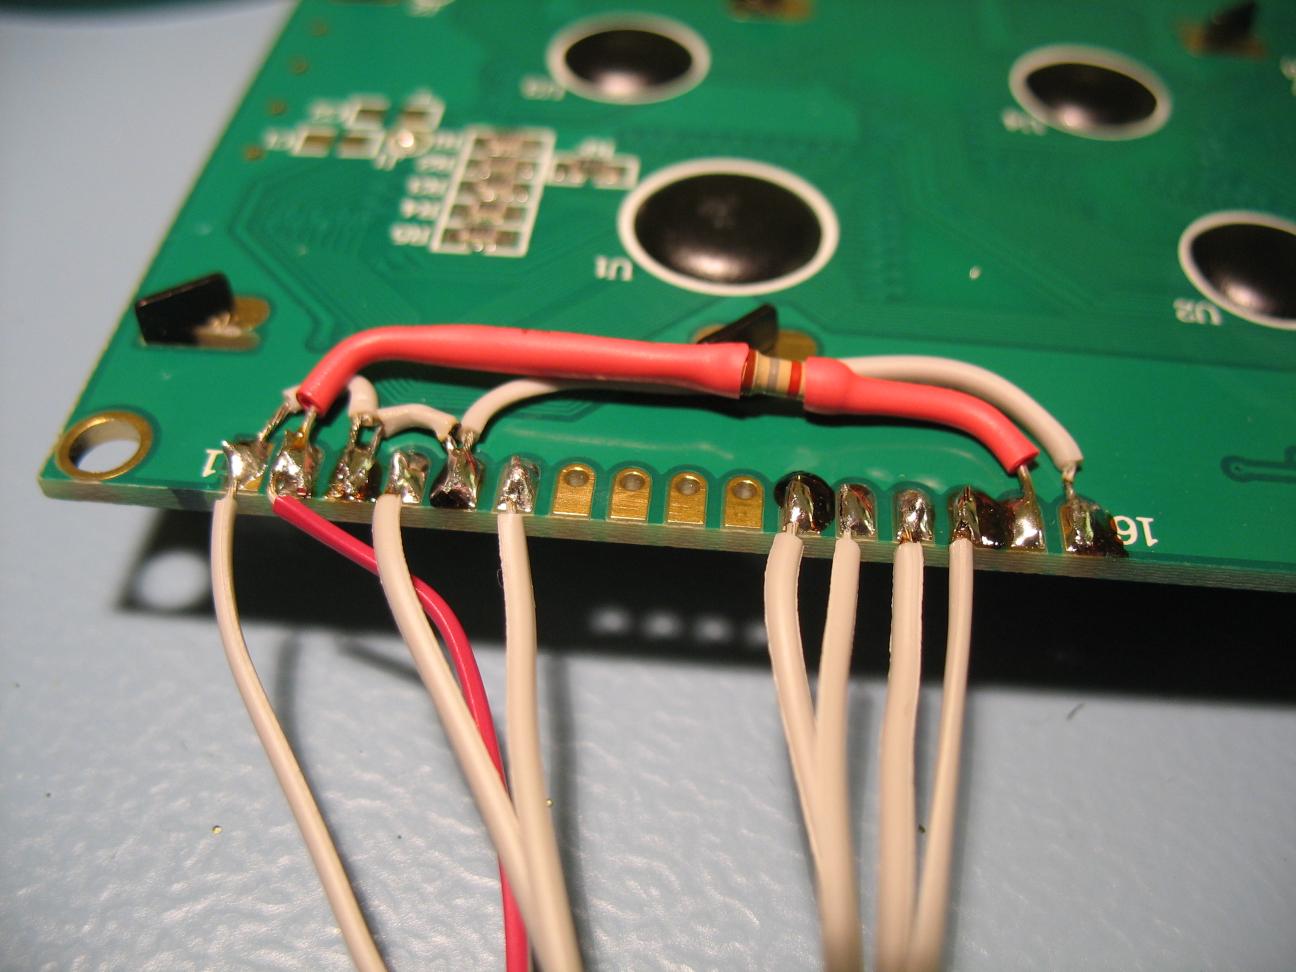 LCD wiring